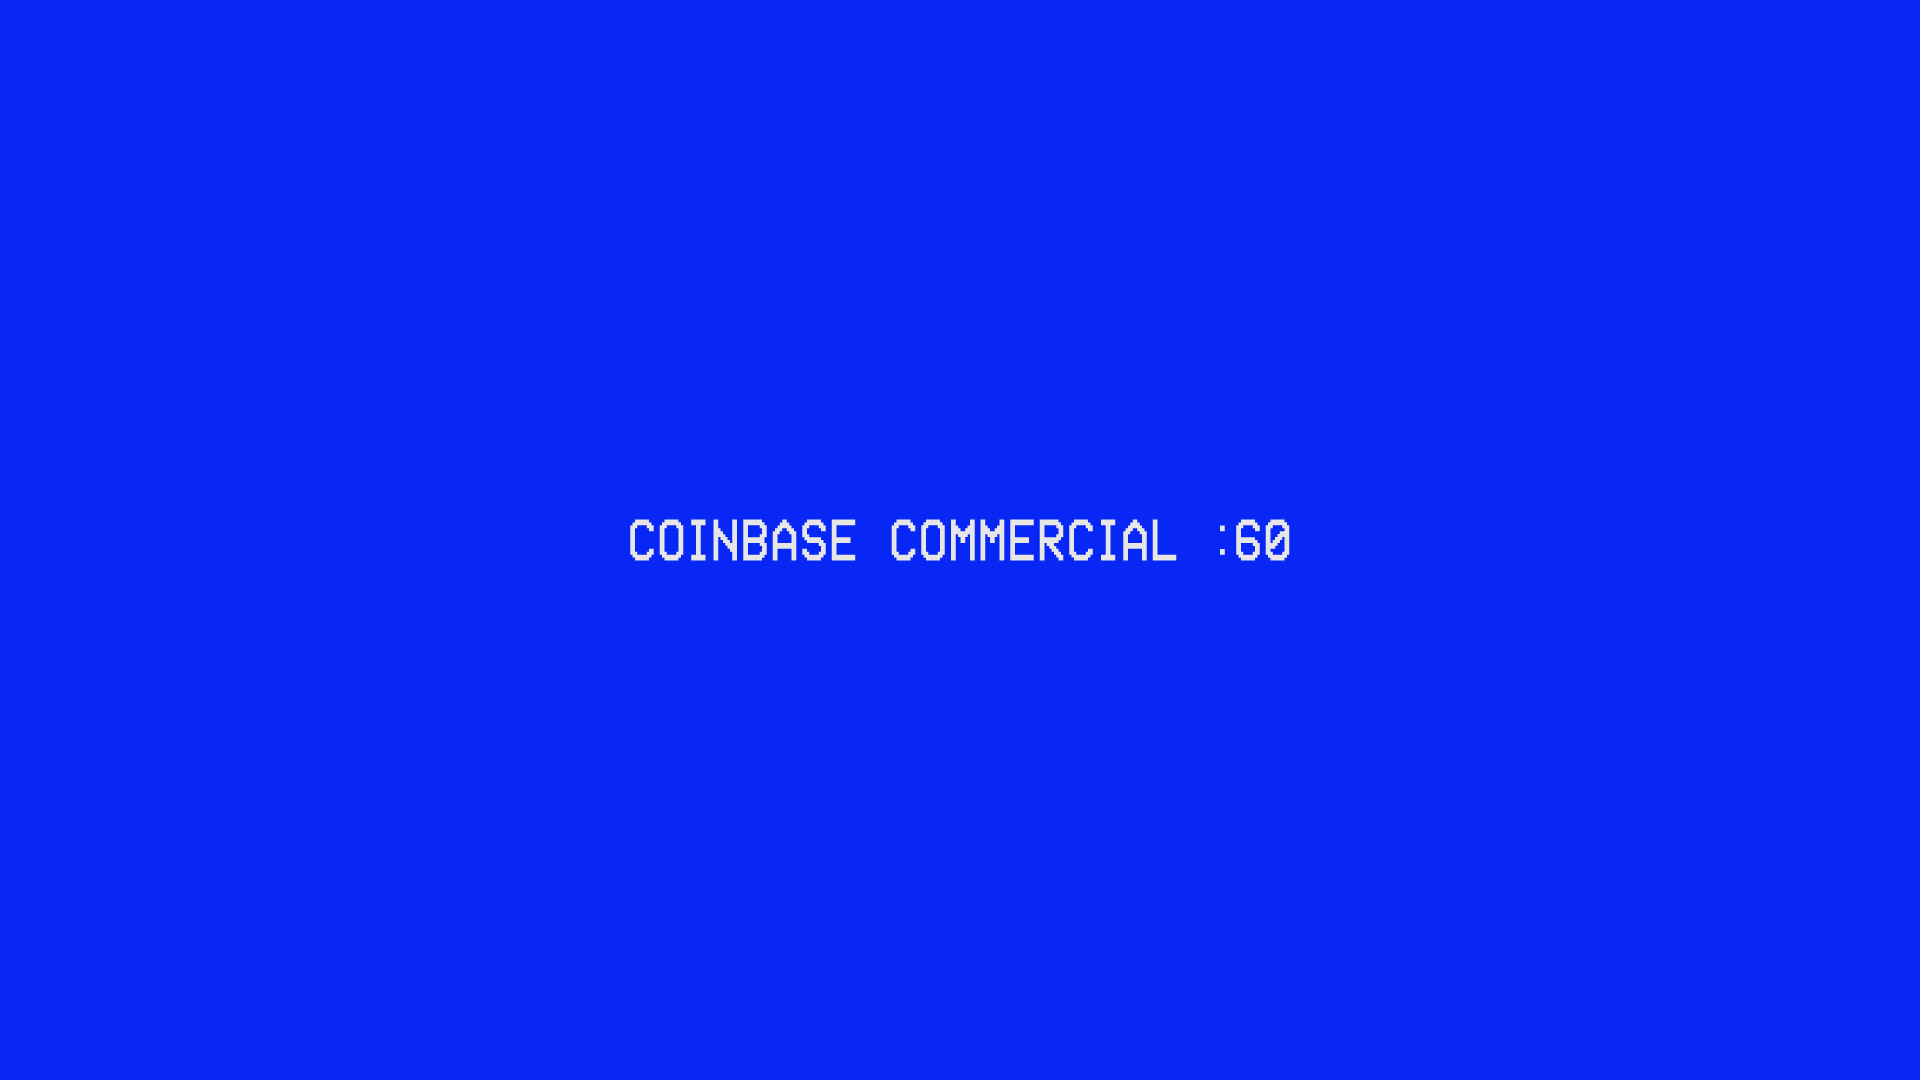 coinbase qr code ad